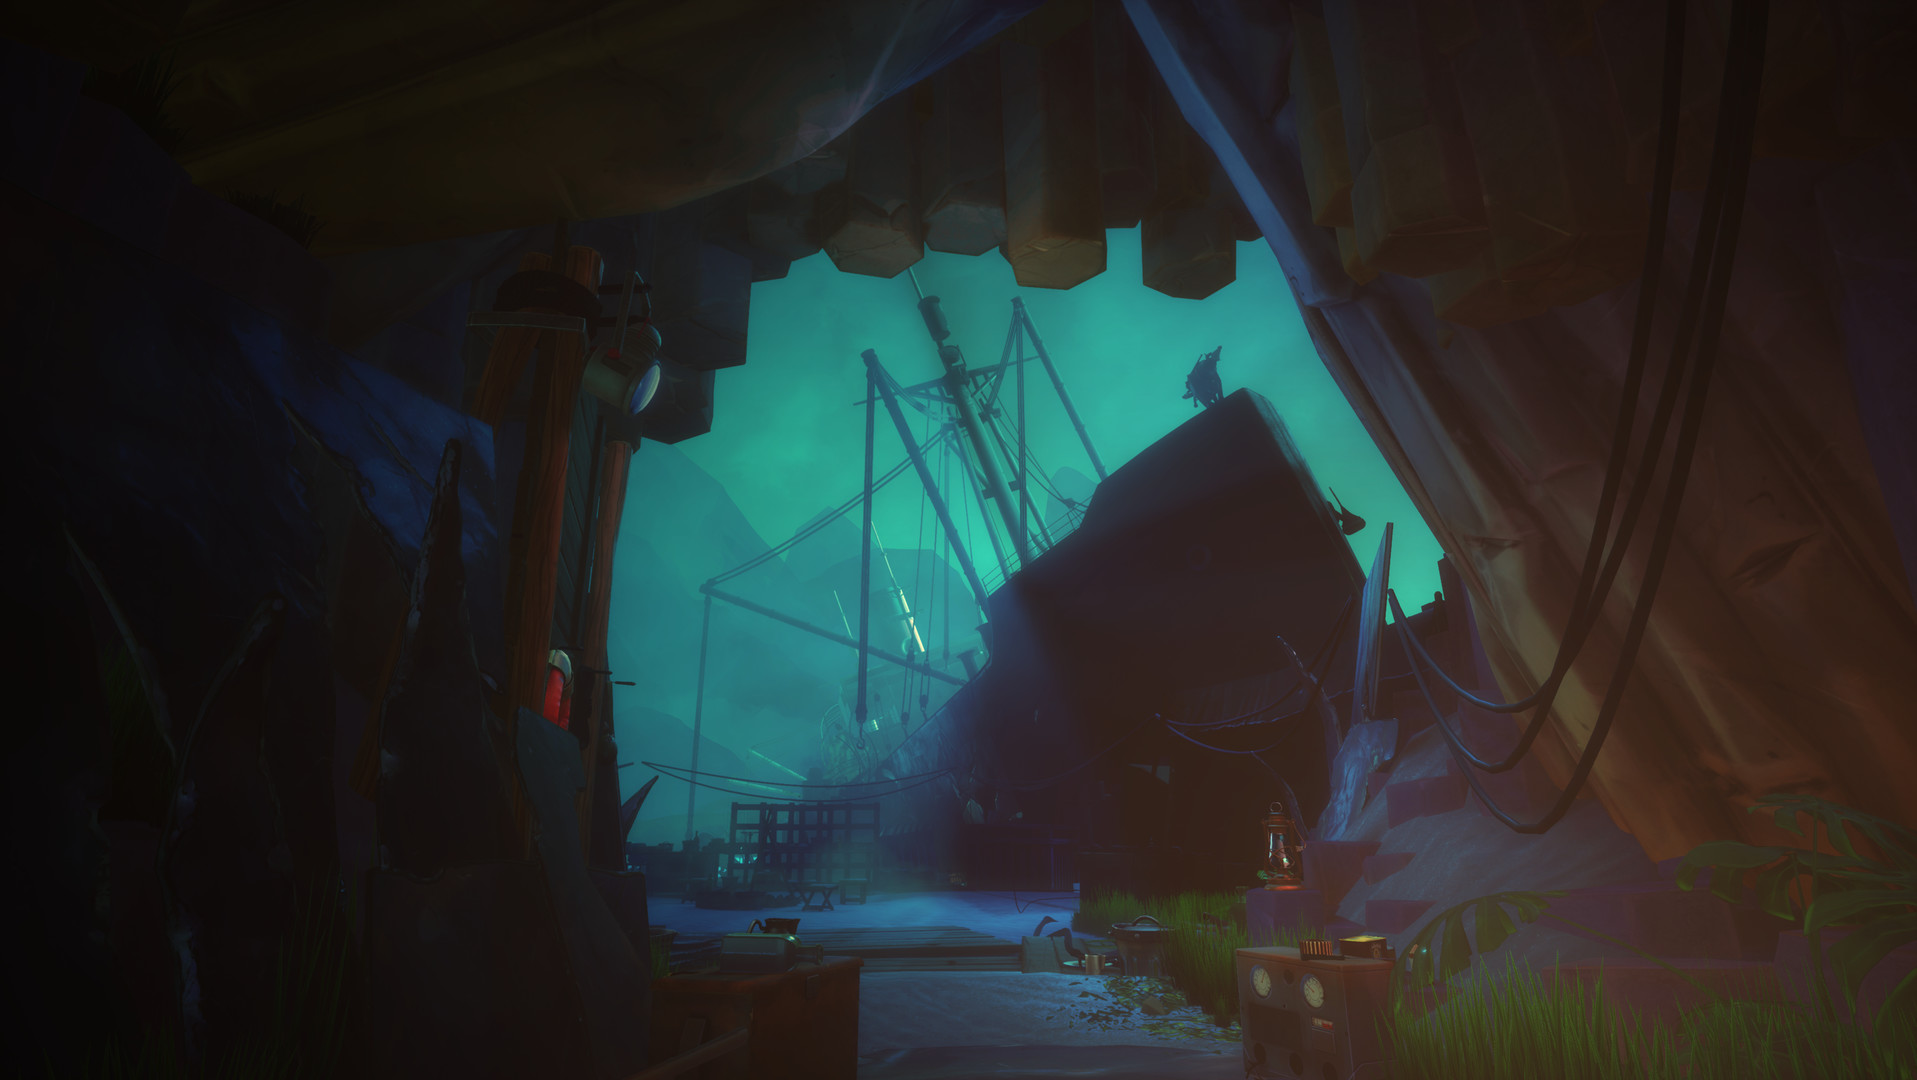 独立冒险游戏《海之呼唤》游戏风景演示 将登陆XSX主机